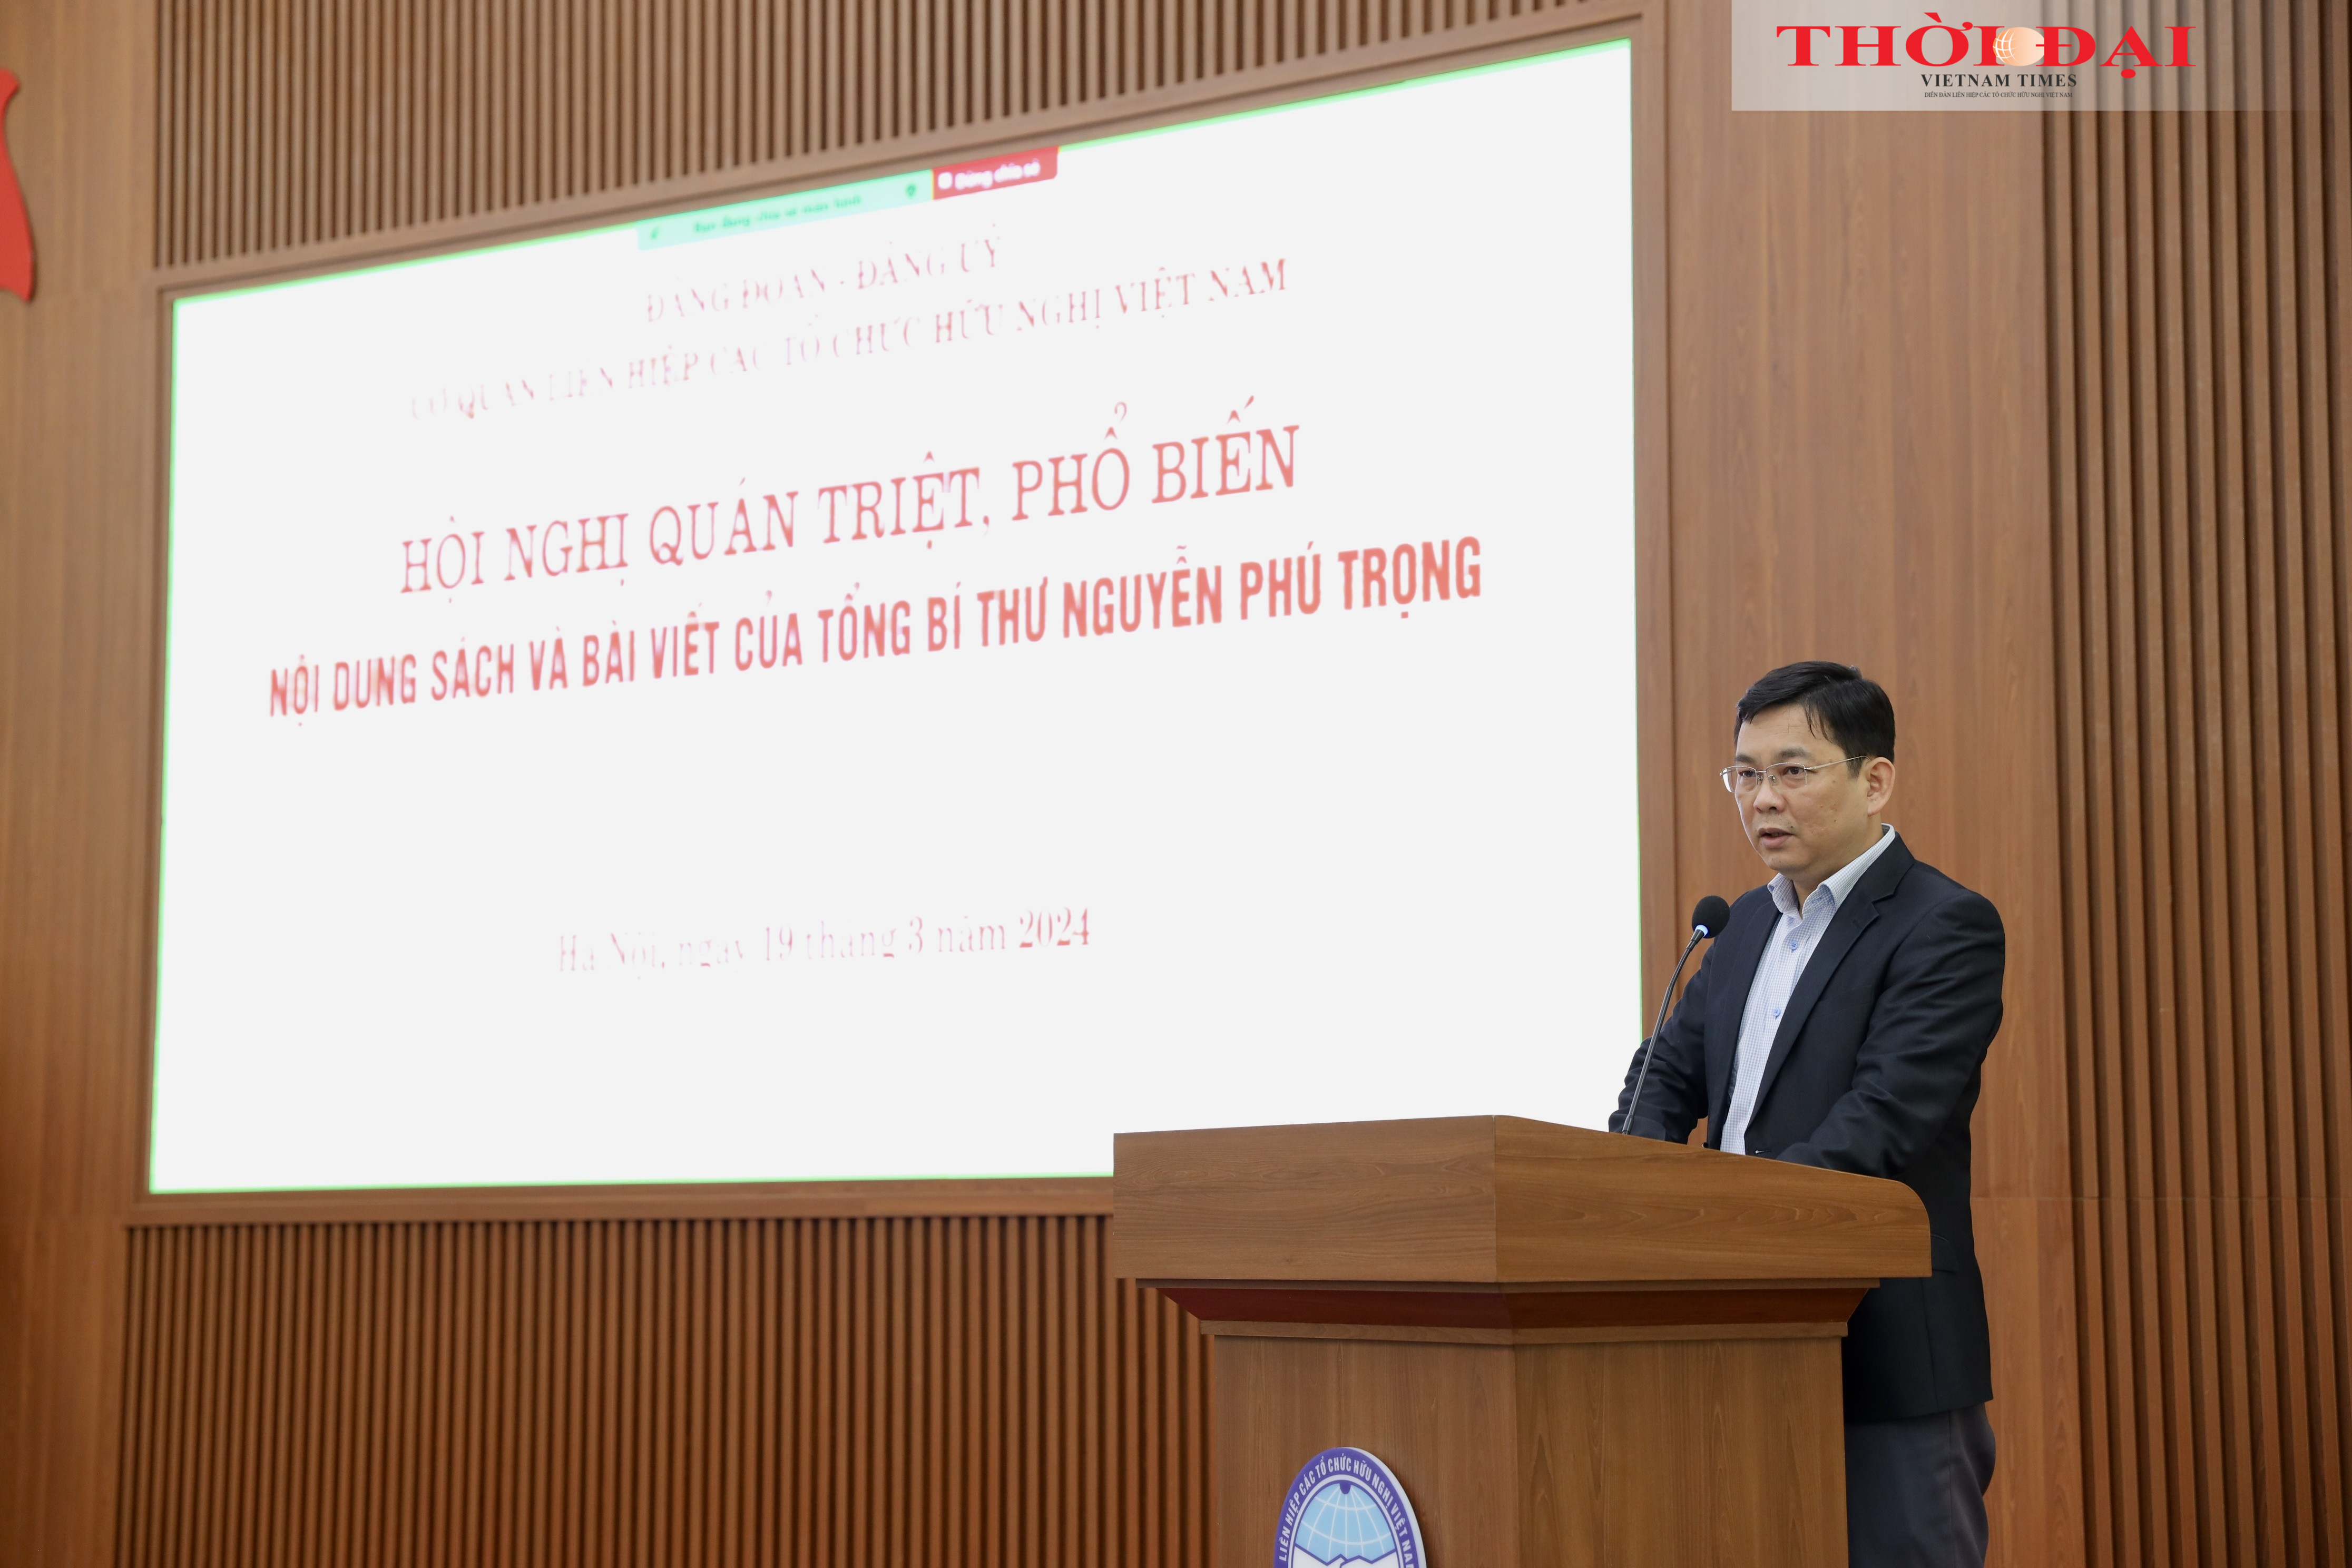 Ông Đồng Huy Cương trình bày nội dung cốt lõi các tài liệu của Hội nghị. (Ảnh: Đinh Hòa)